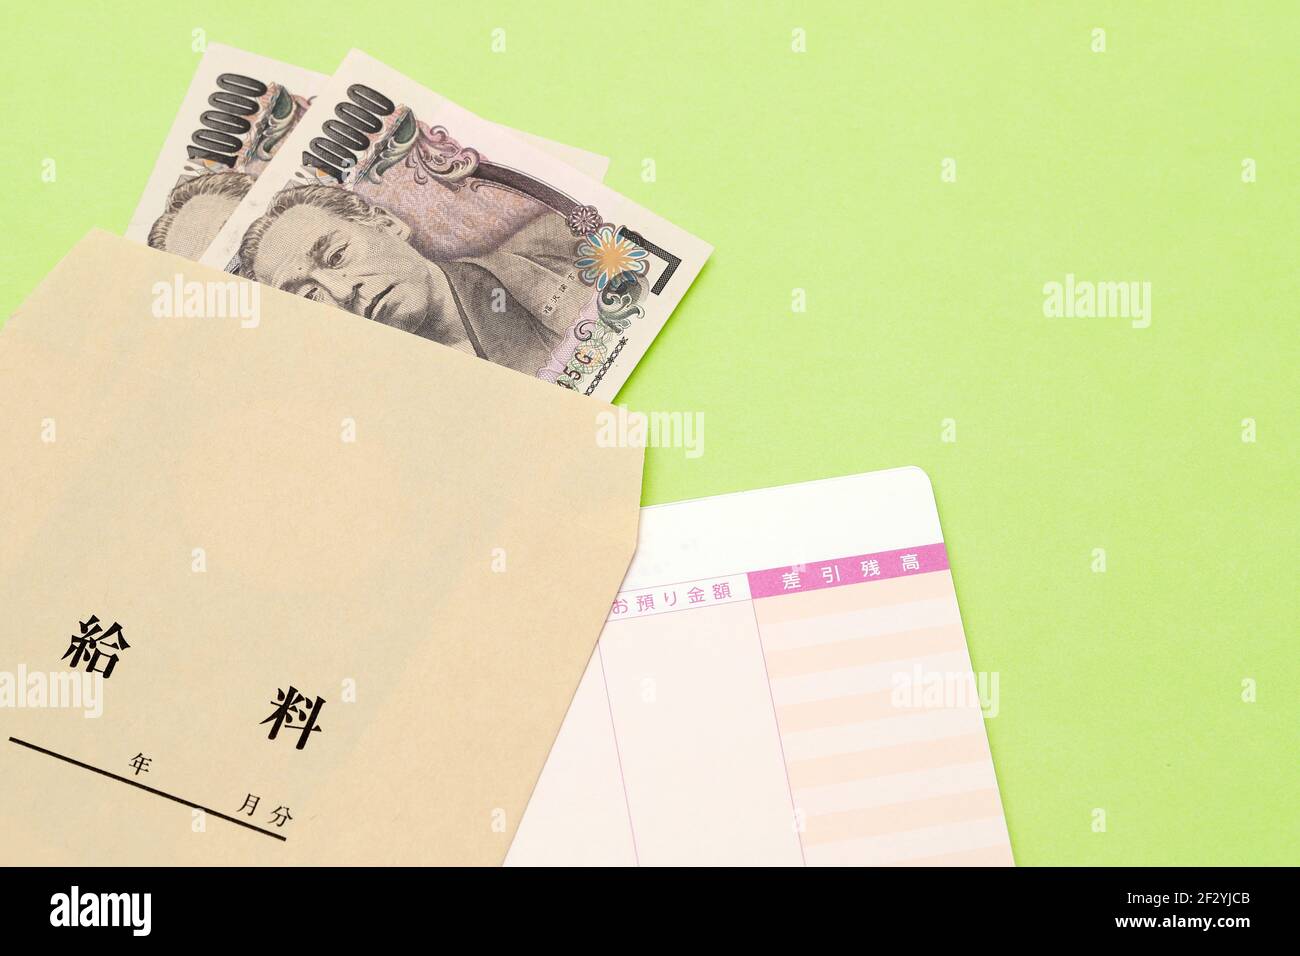 Japanisches Geld und Sparbuch mit Lohntüte isoliert auf weißem Hintergrund. Übersetzung: Jahr, Monat, Tag, Zahlung, Anzahlung, Saldo, Gehalt. Stockfoto